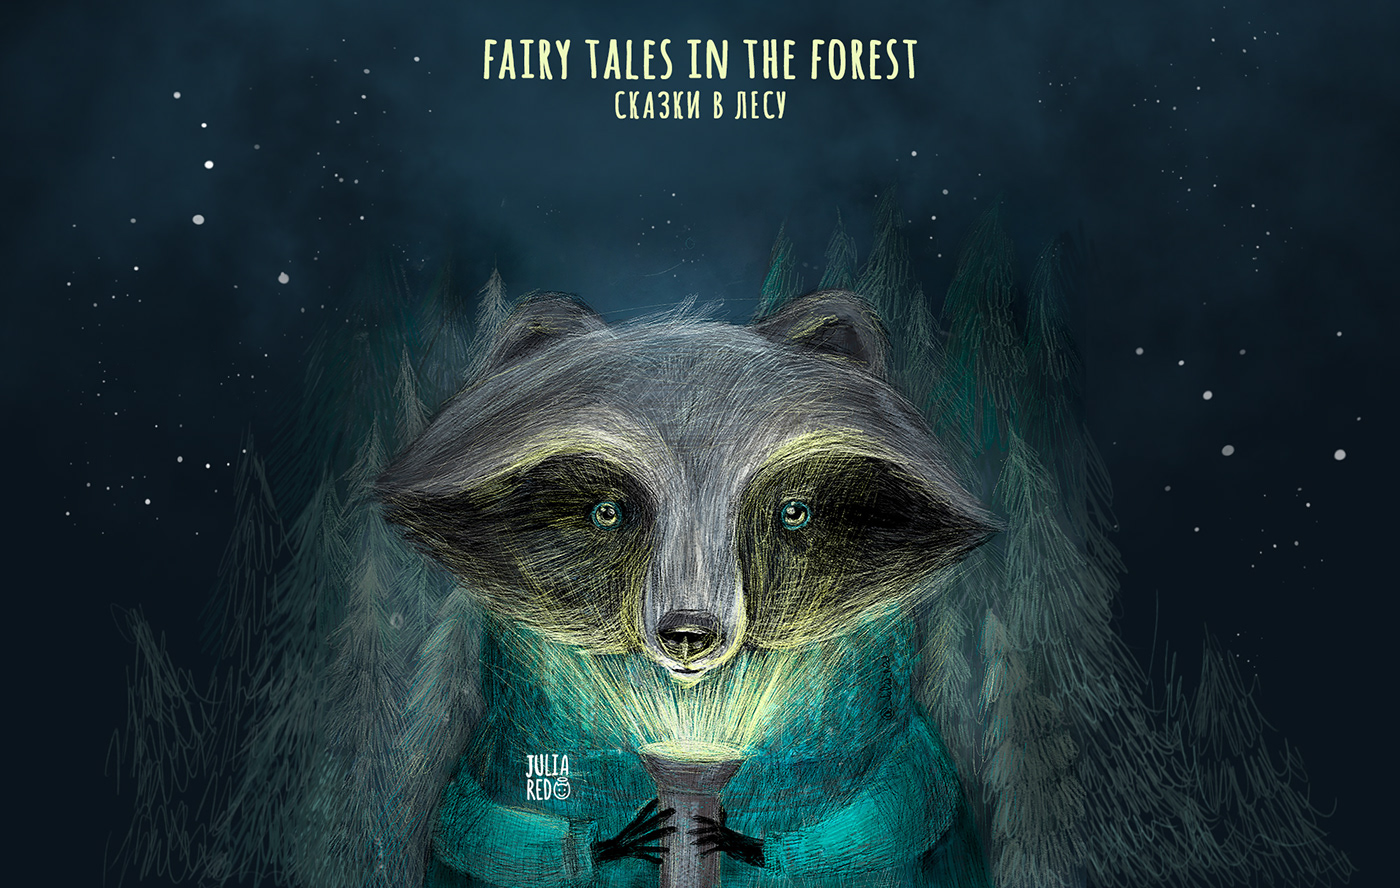 Иллюстрация для детей и взрослых с милым енотов ночью в лесу с фонариком в руках.